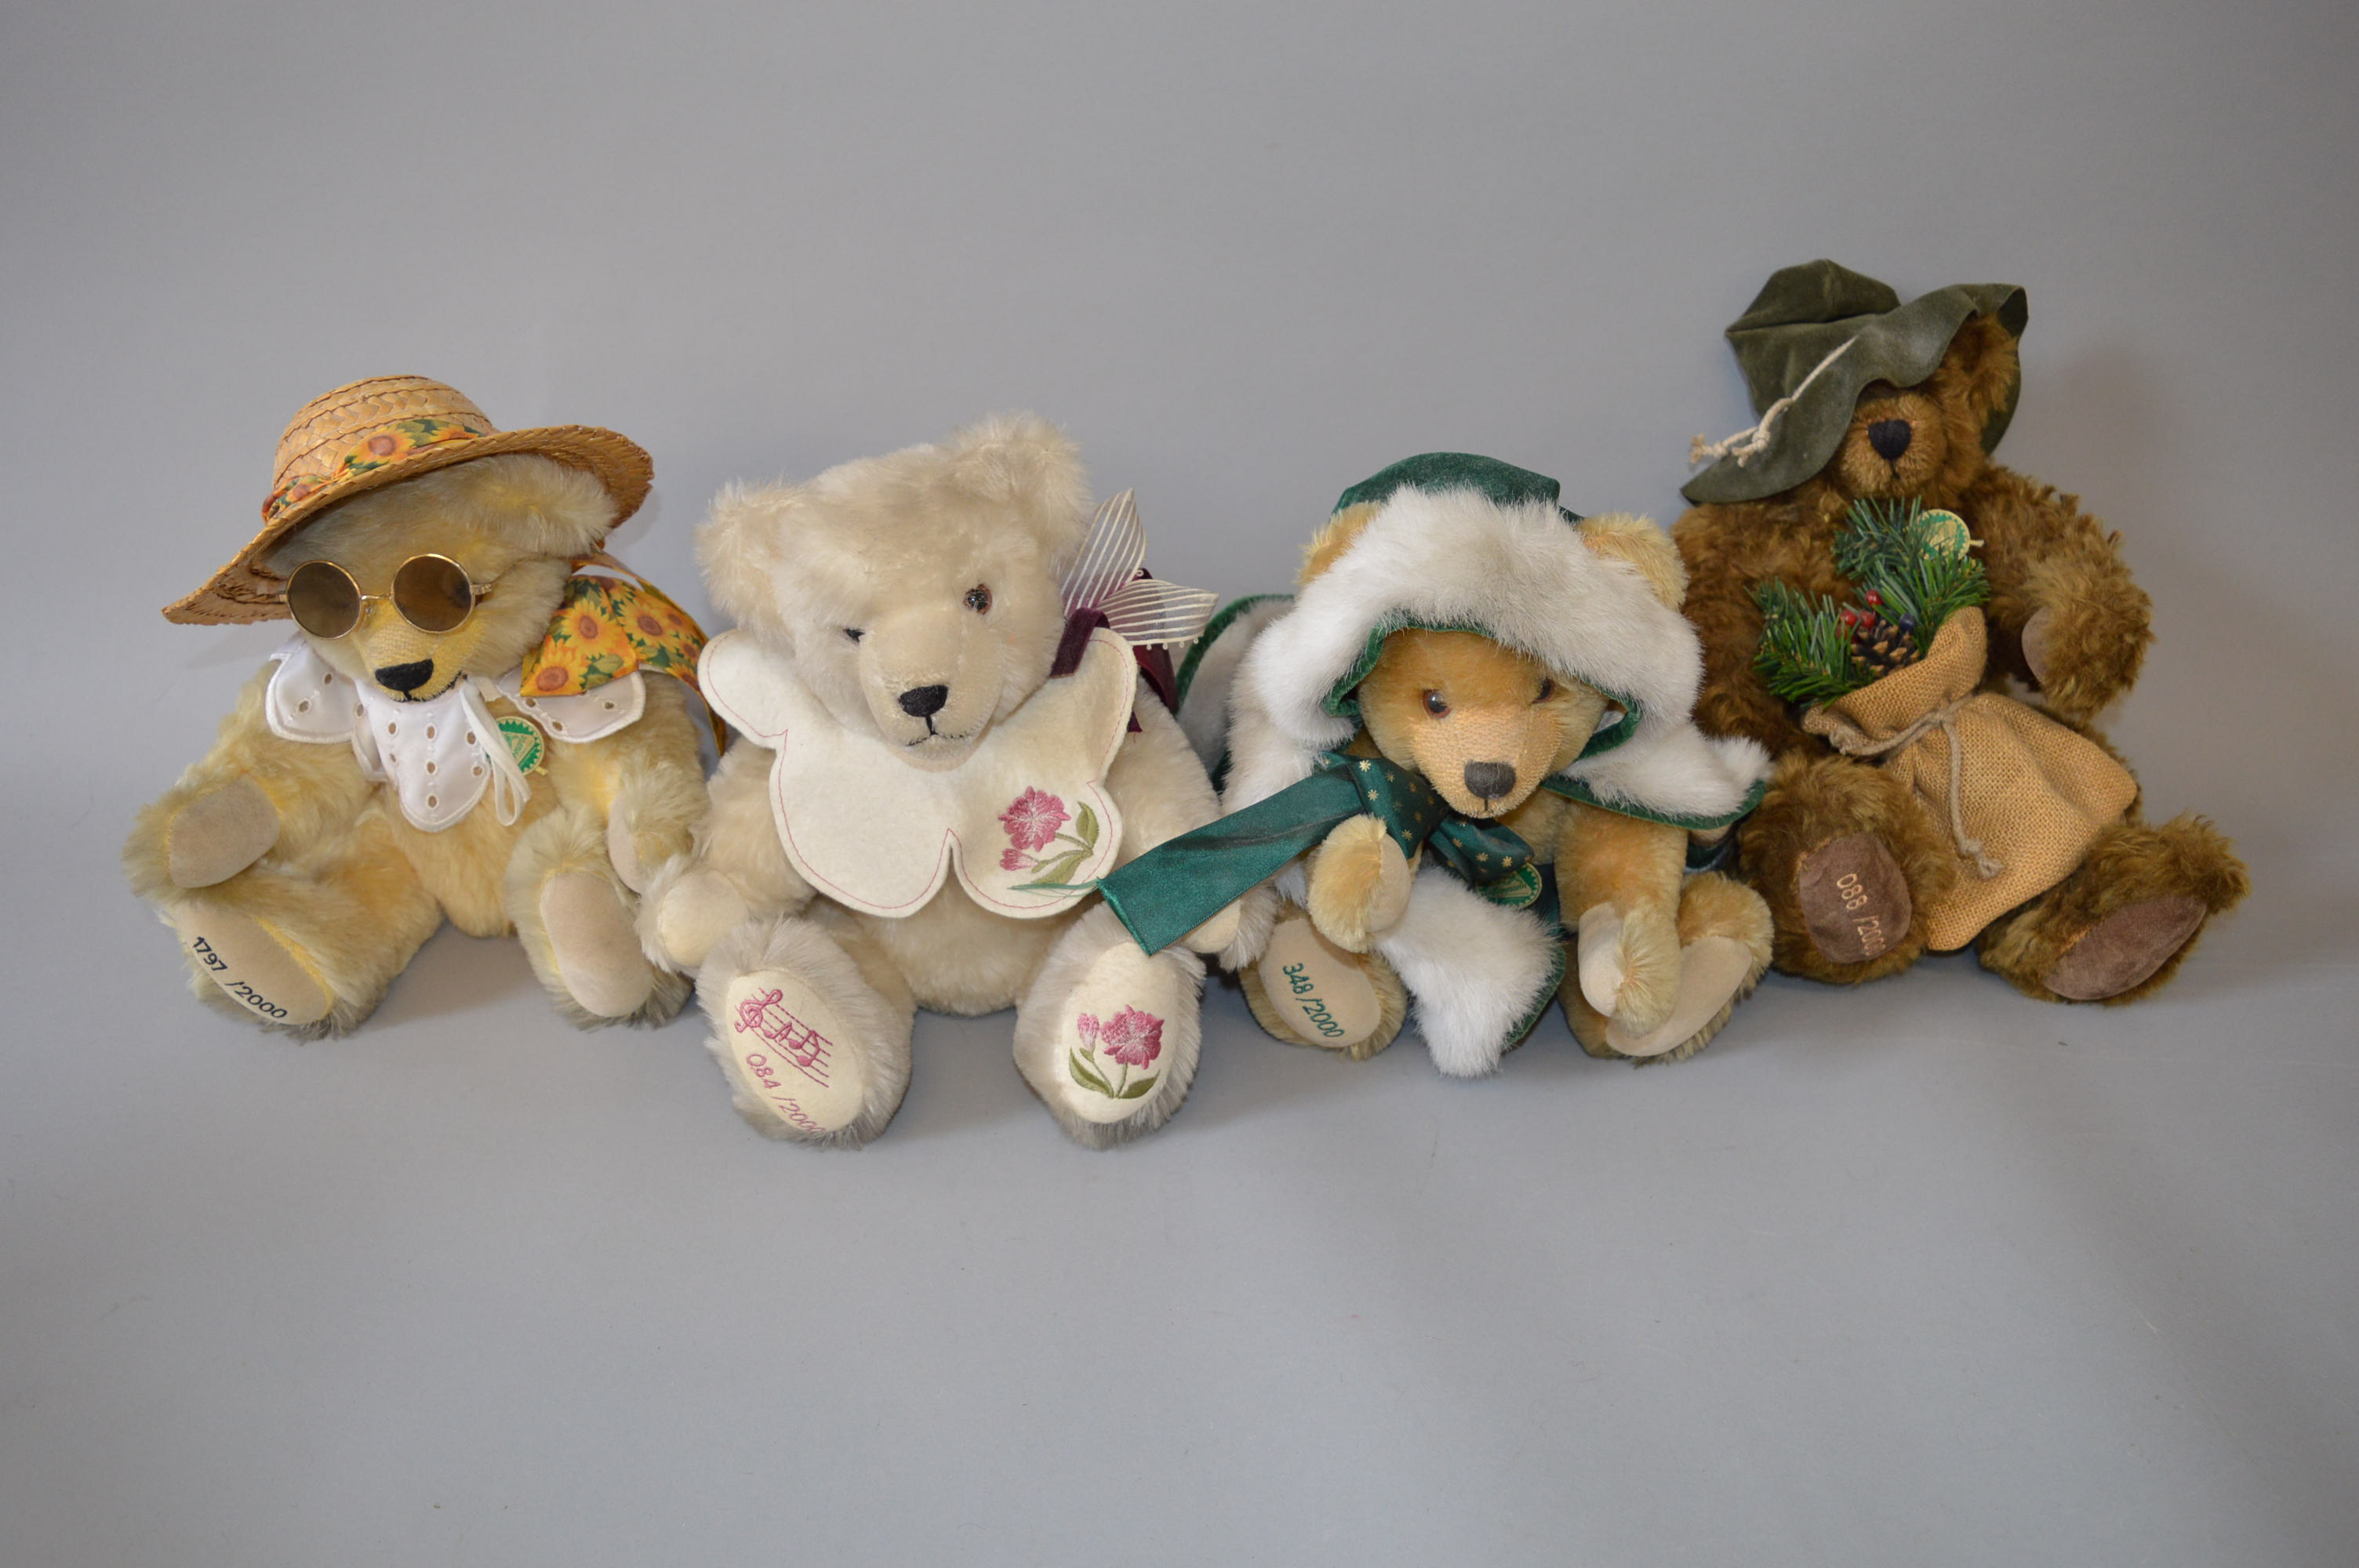 Four Hermann 'Season' Teddy Bears: Autumn Bear, ltd.ed. 88/2000; Summer Sunshine Bear, ltd.ed.